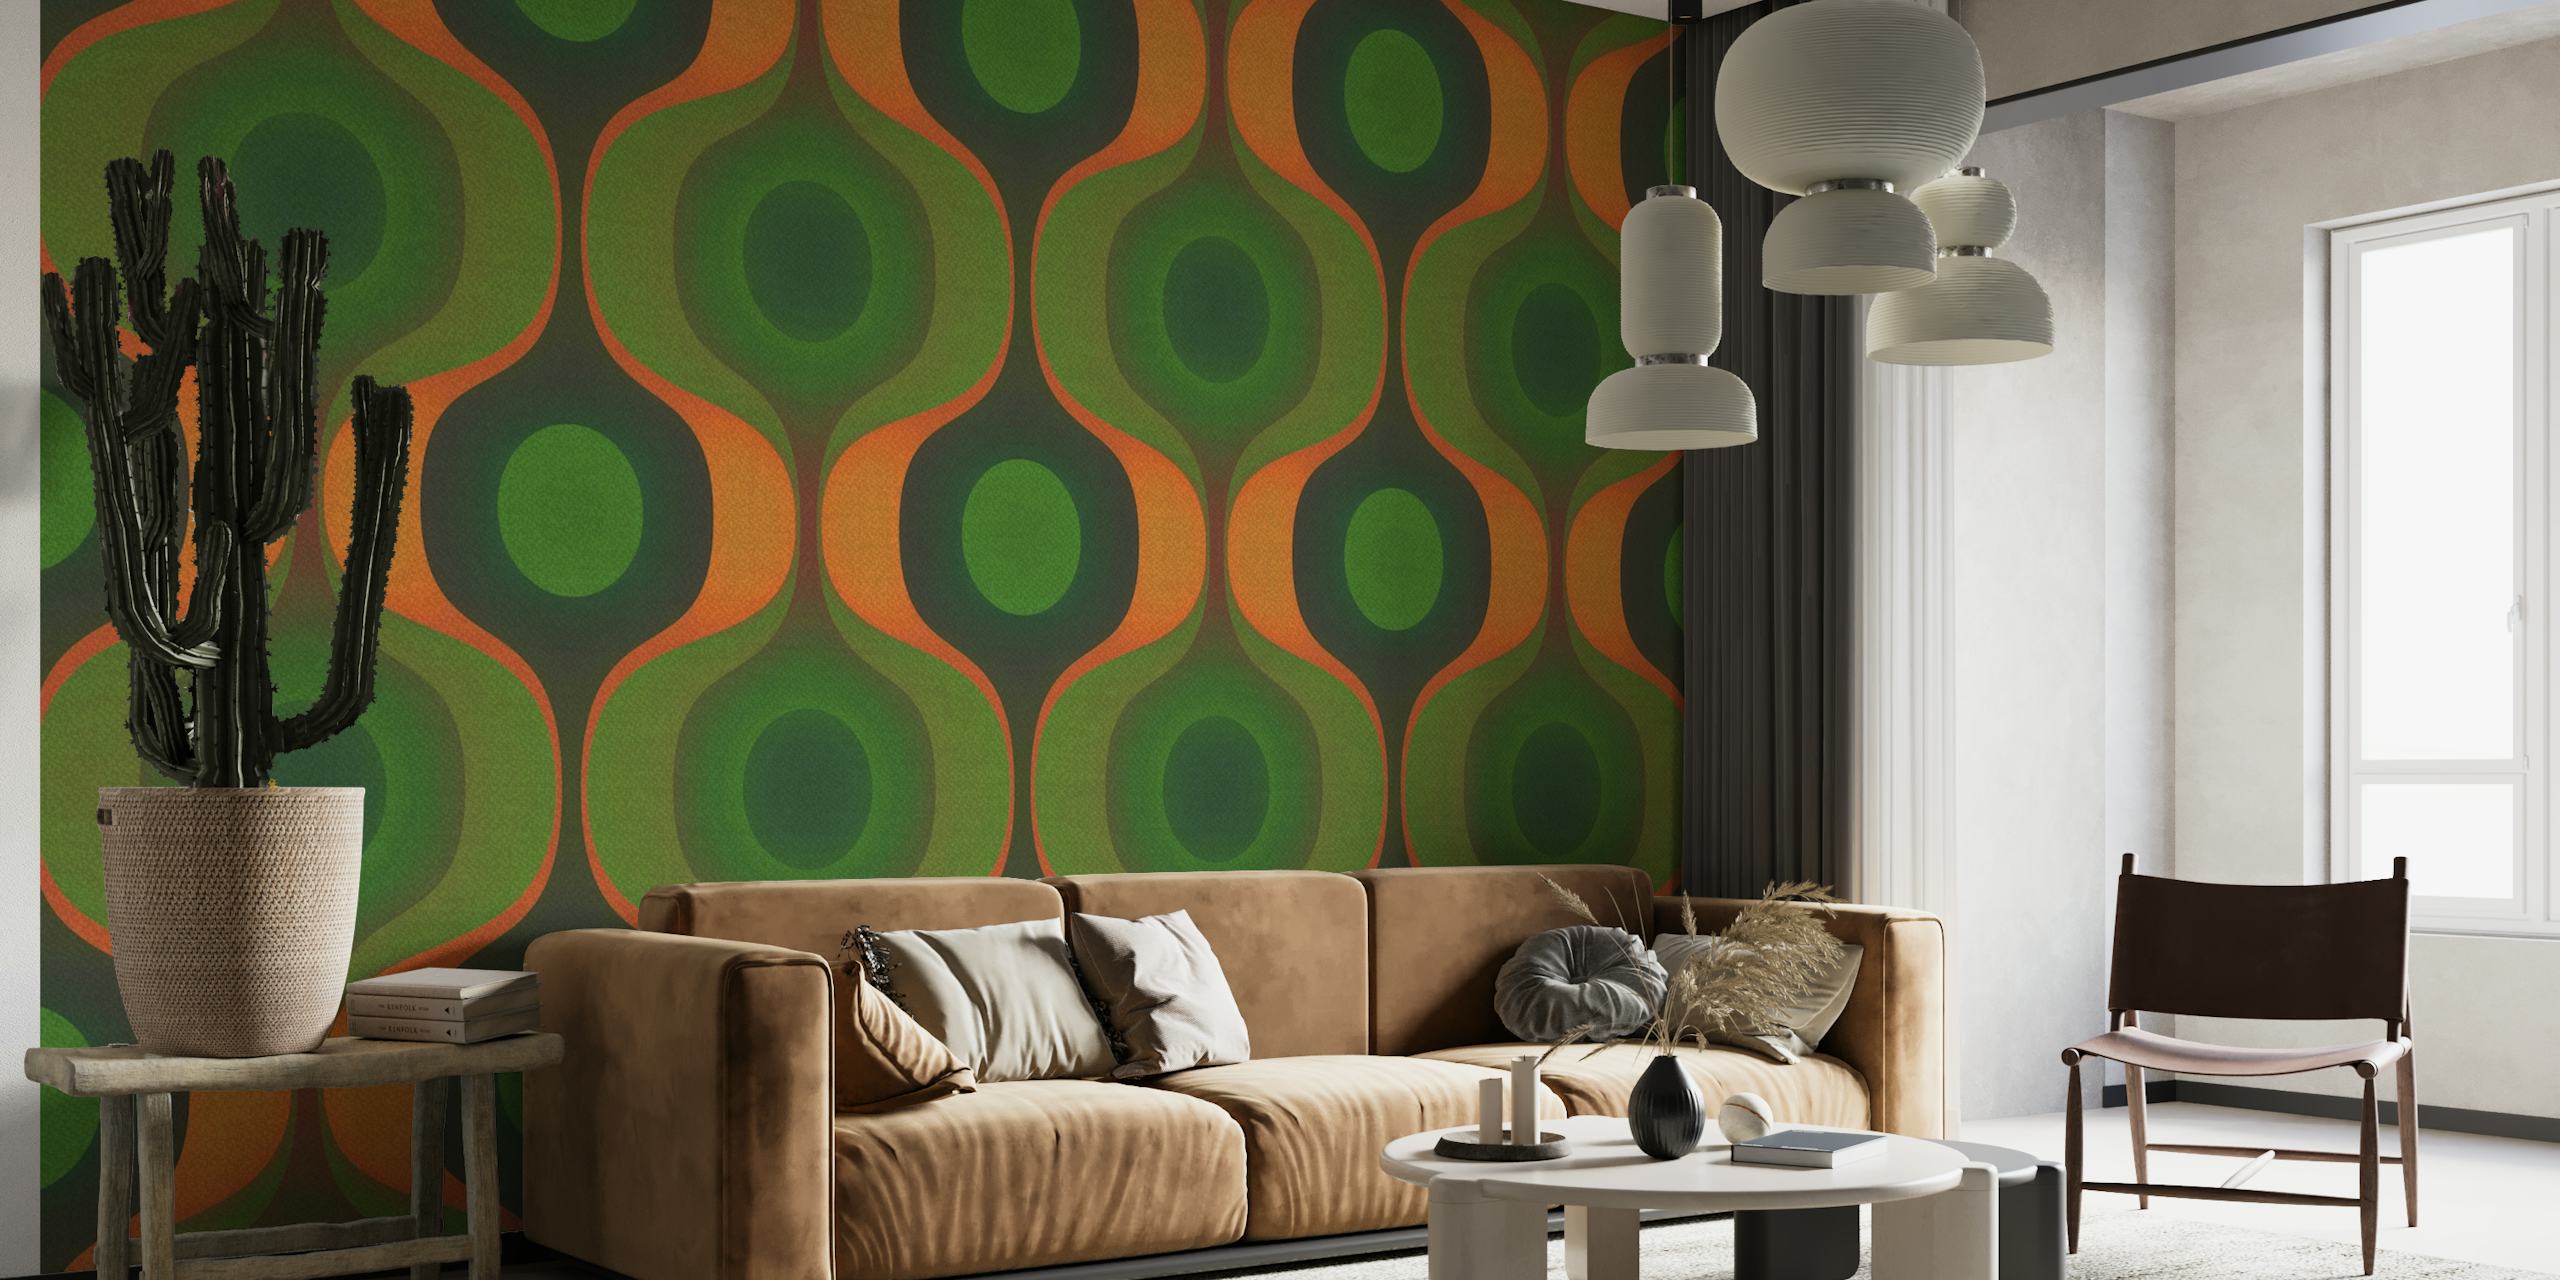 Papier peint mural à motif géométrique vert et orange rappelant les années 1970.